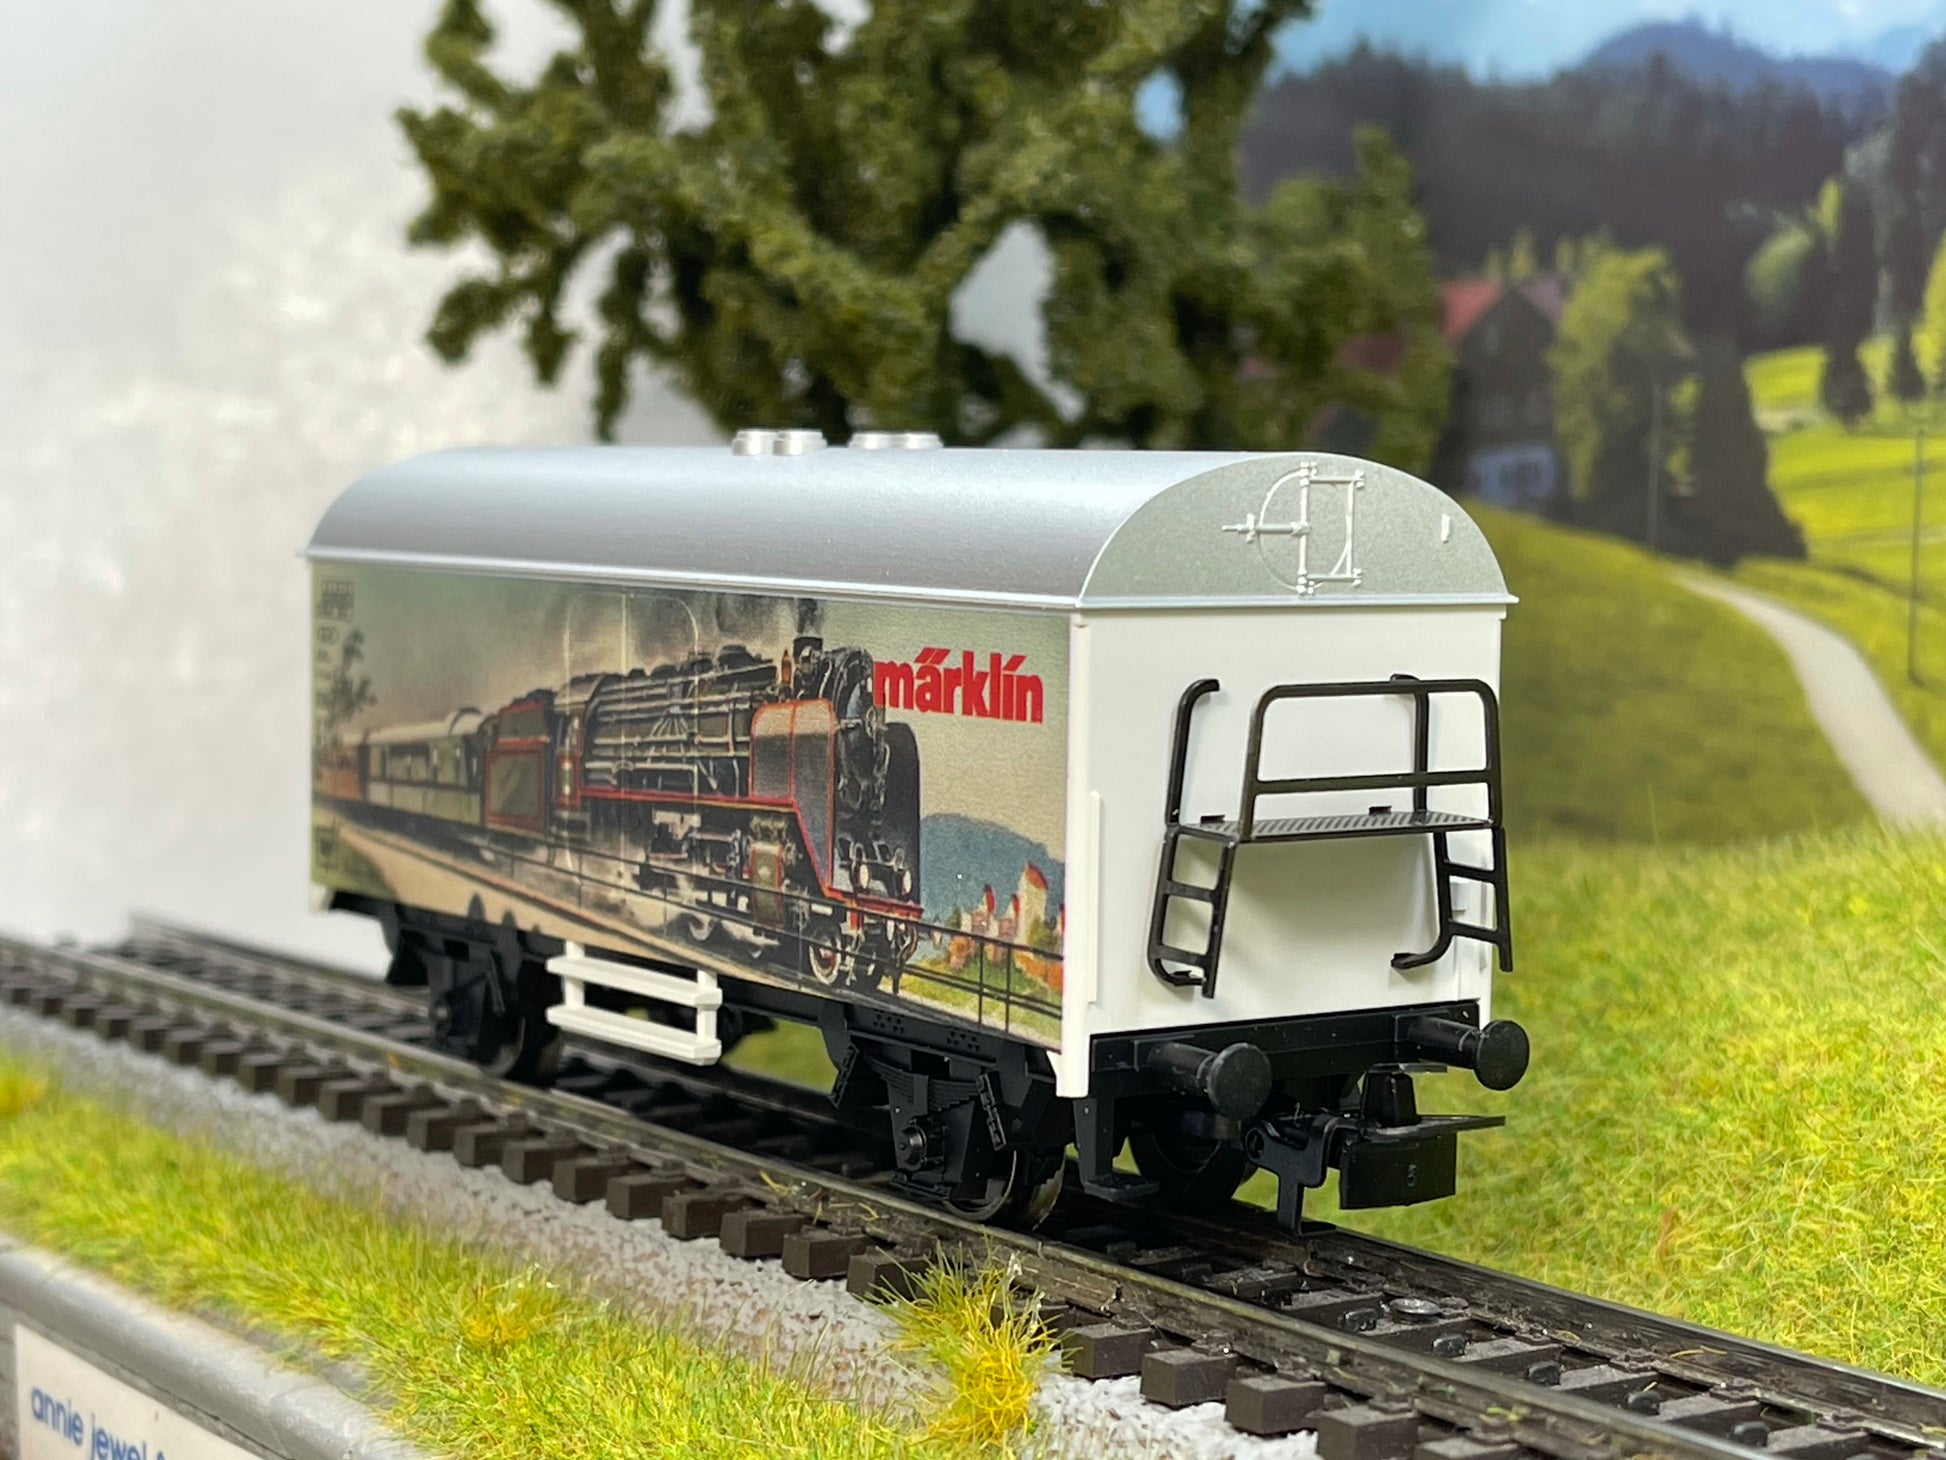 Marklin 44221 - International Tag der Modellbahn 2021 freight car